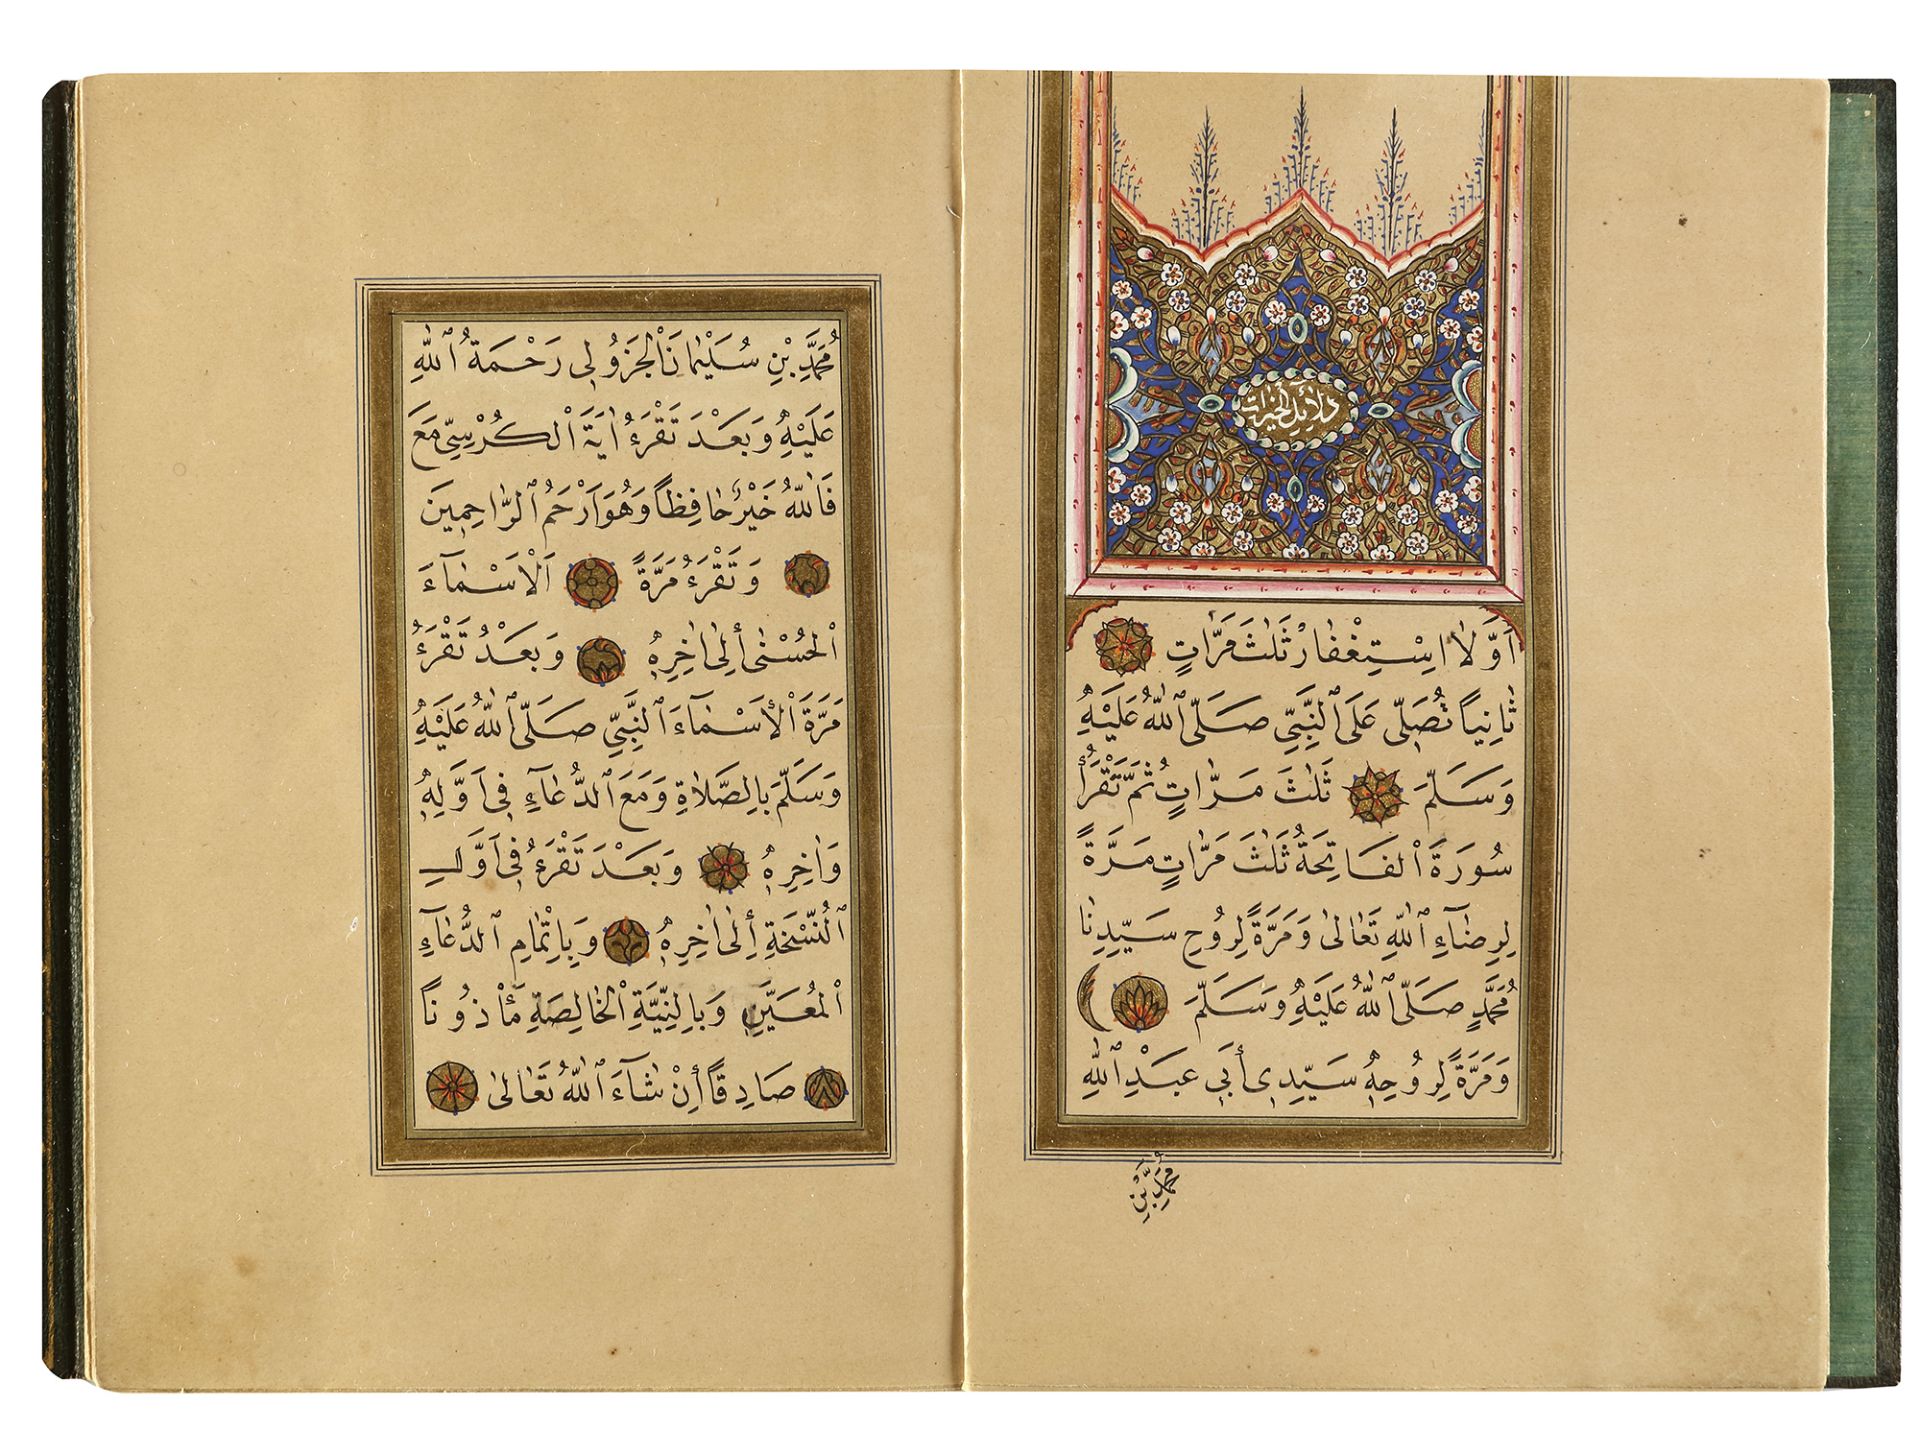 DALA’IL AL-KHAYRAT BY OSMAN HILMI STUDENT OF MUHAMMED ANWAR EFENDI, TURKEY, 1295 AH/1878 AD - Image 2 of 9